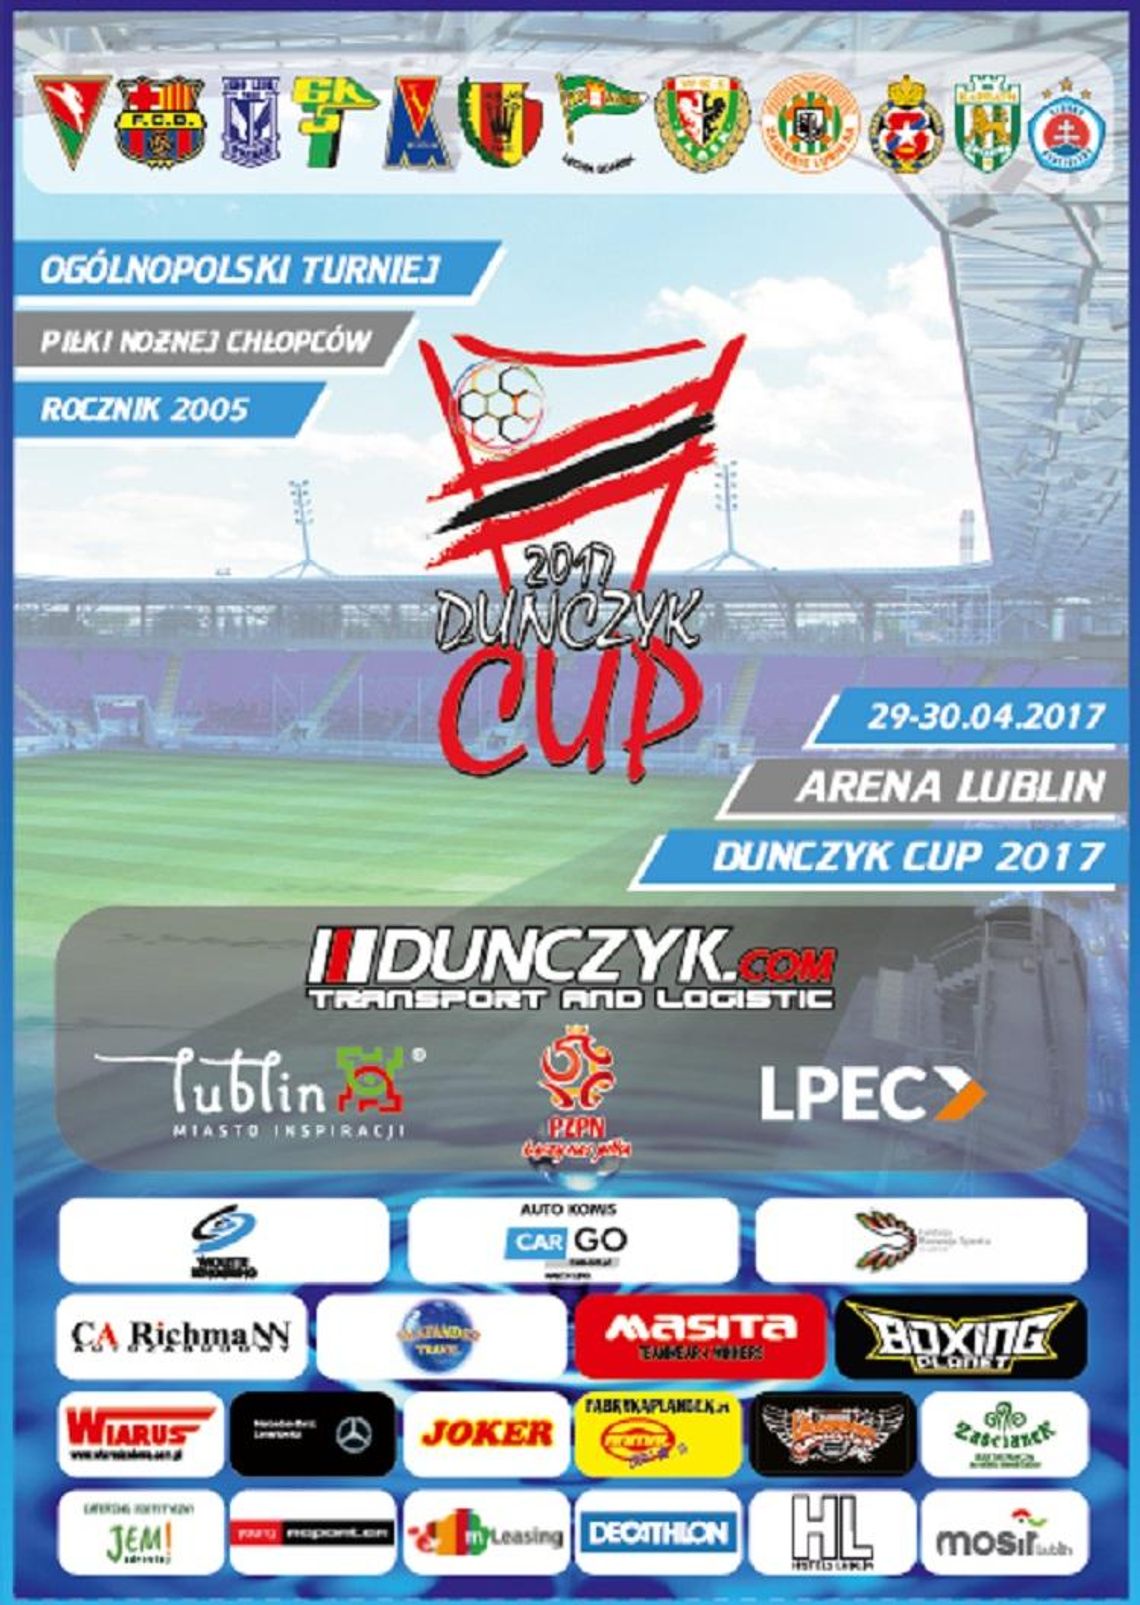 Duńczyk Cup 2017. Lubelska.tv będzie transmitować*